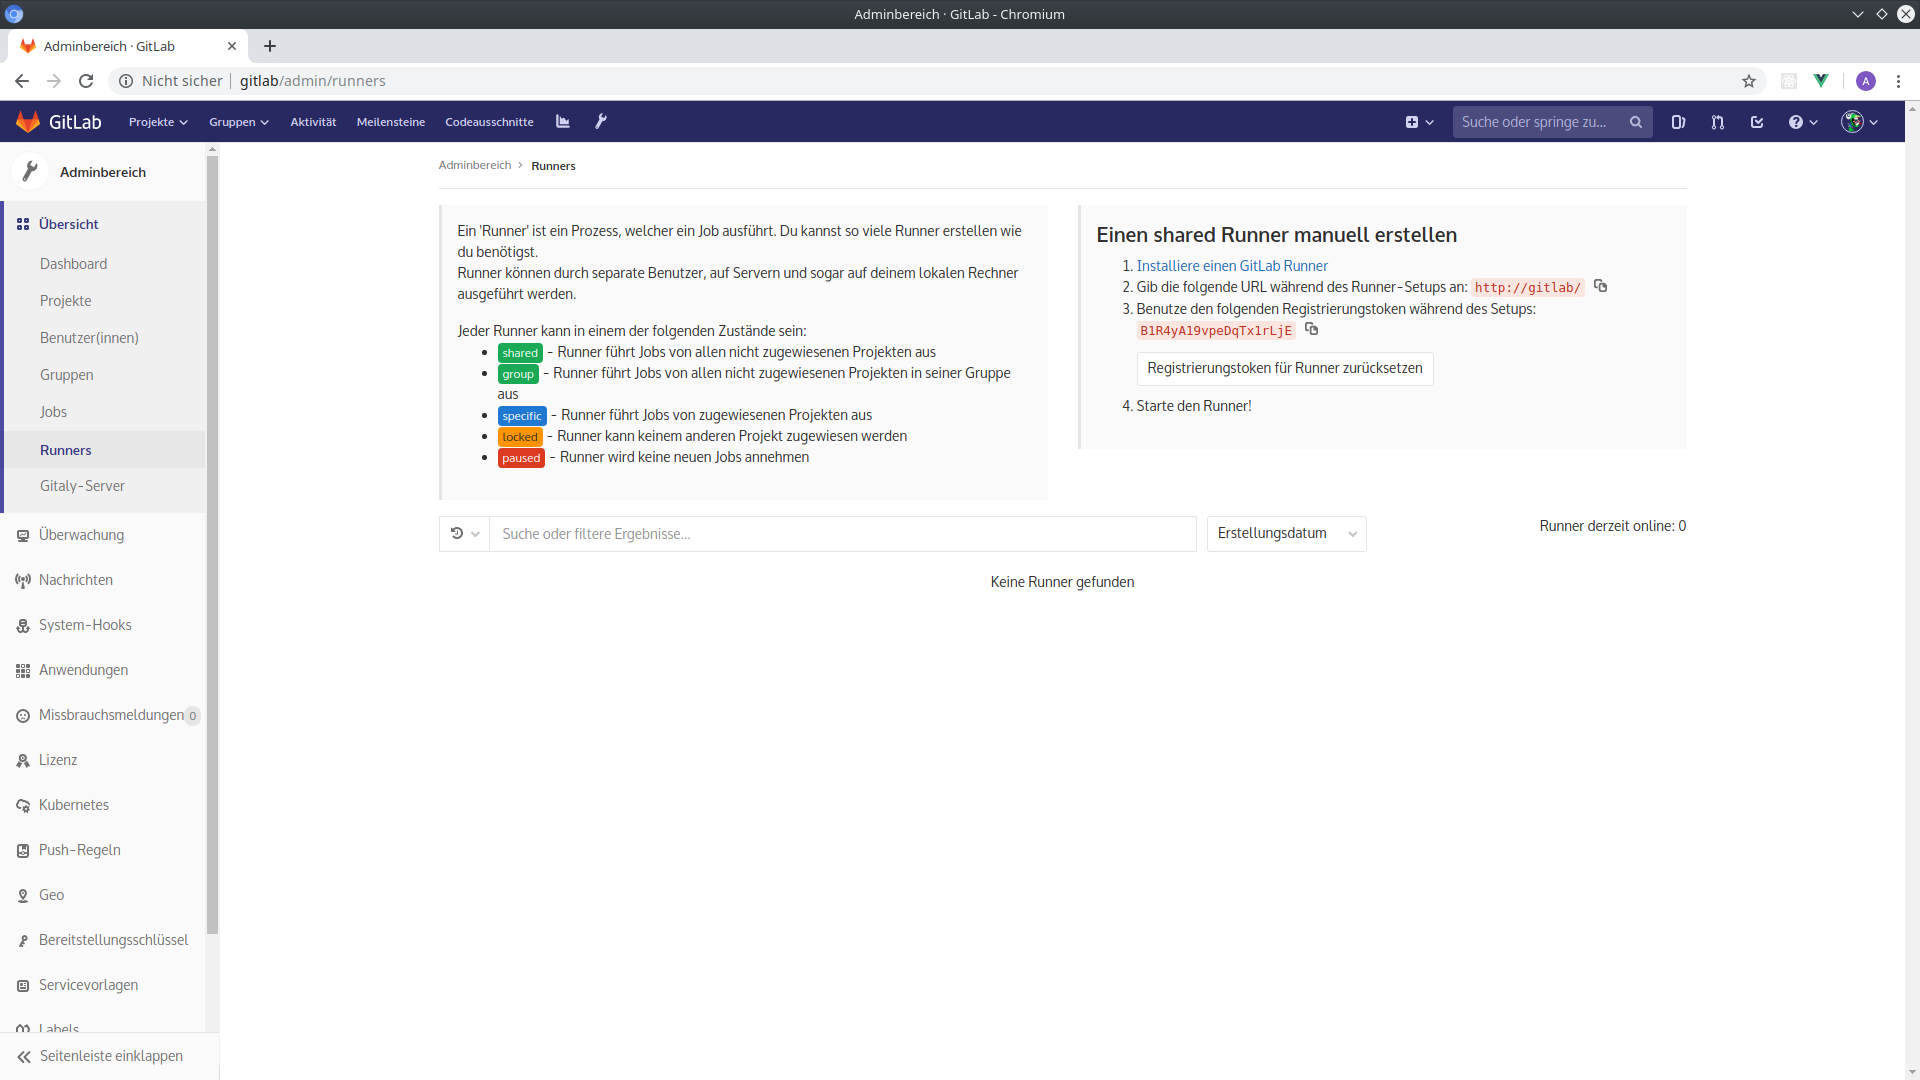 GitLab-Adminbereich: Kein Runner registriert